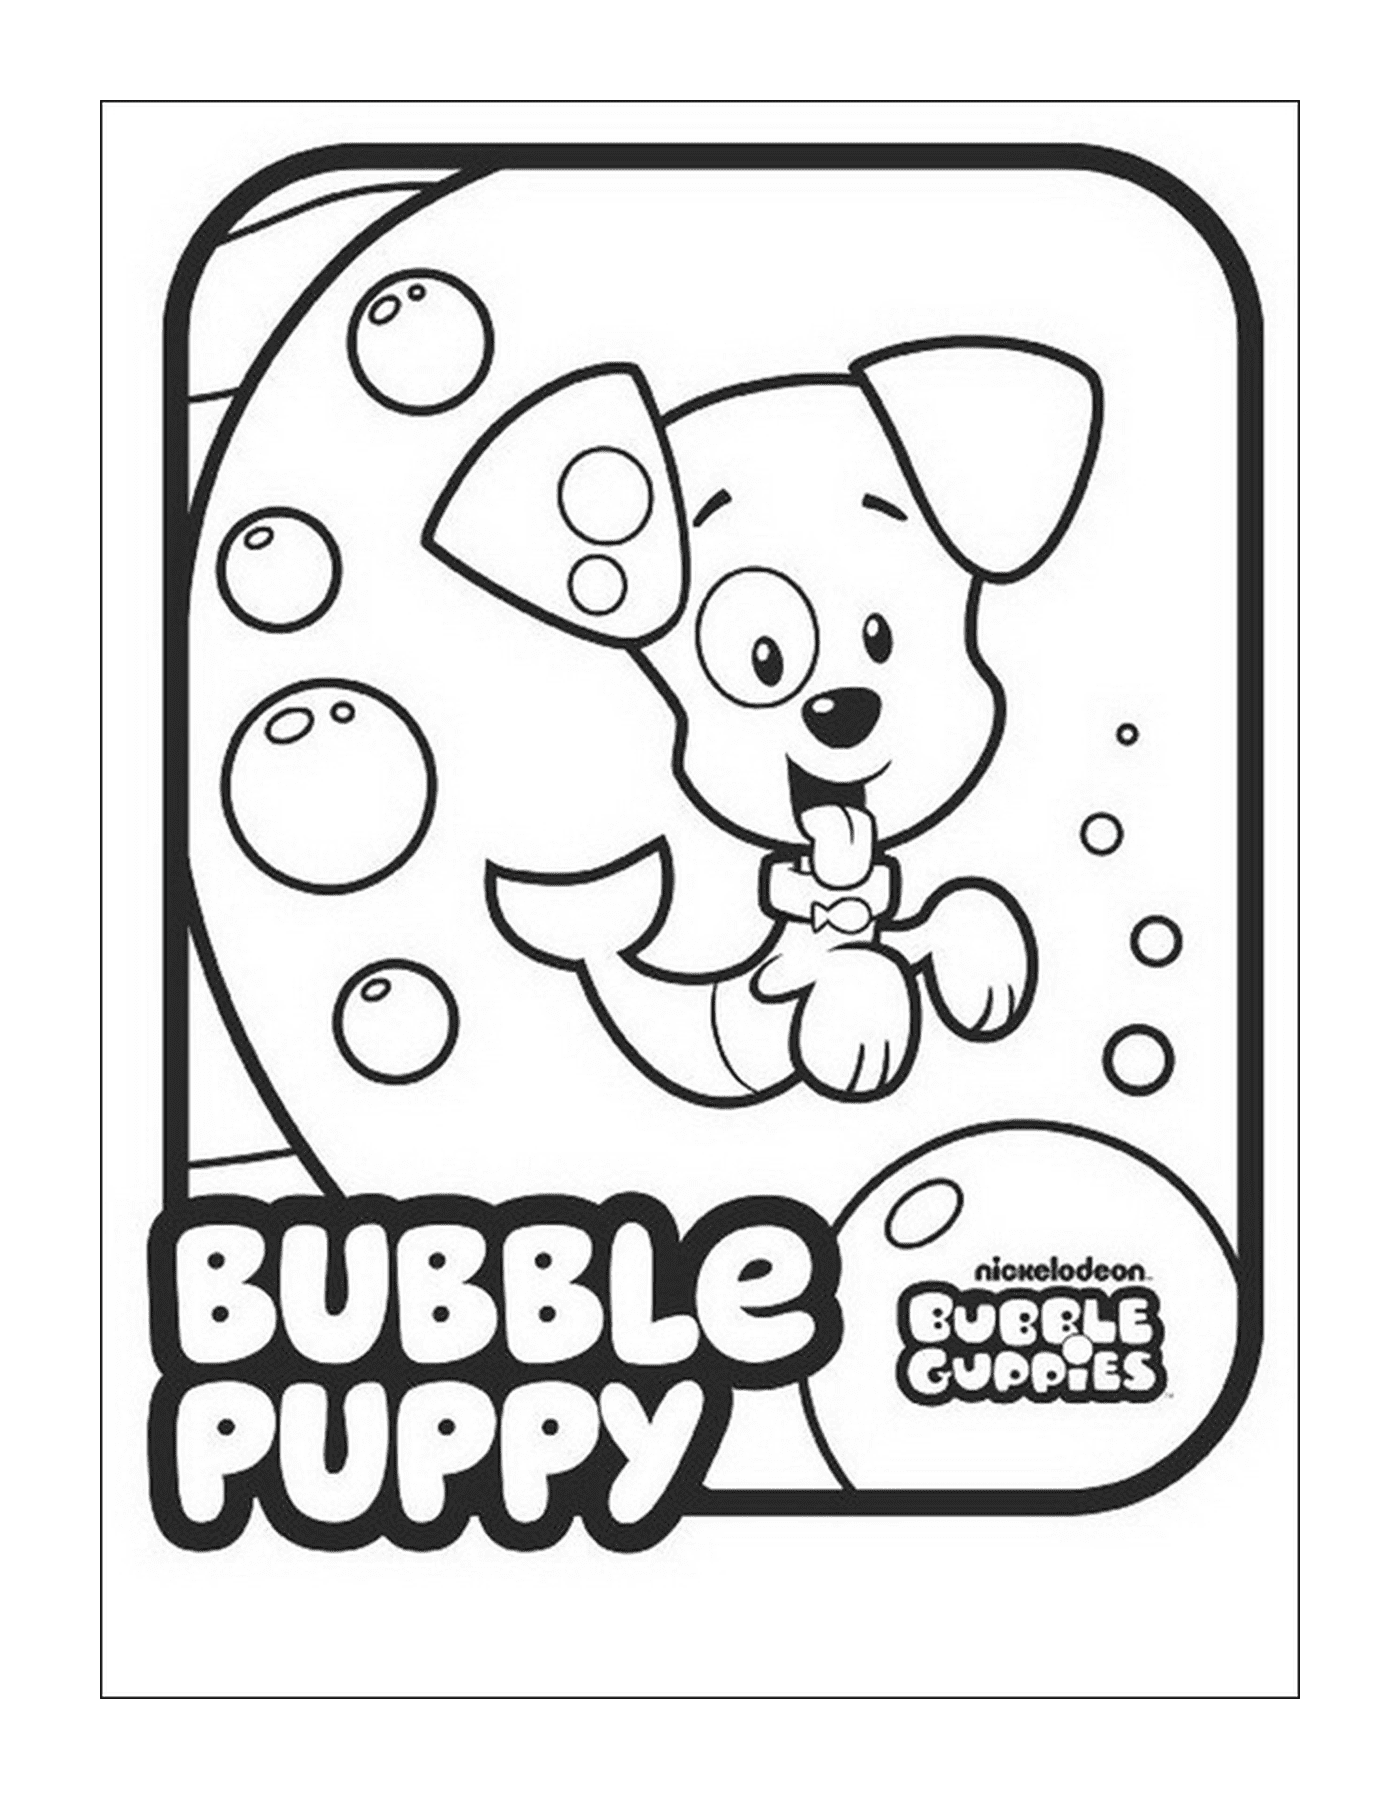   Une image de Bubble Guppies avec une inscription répétée 